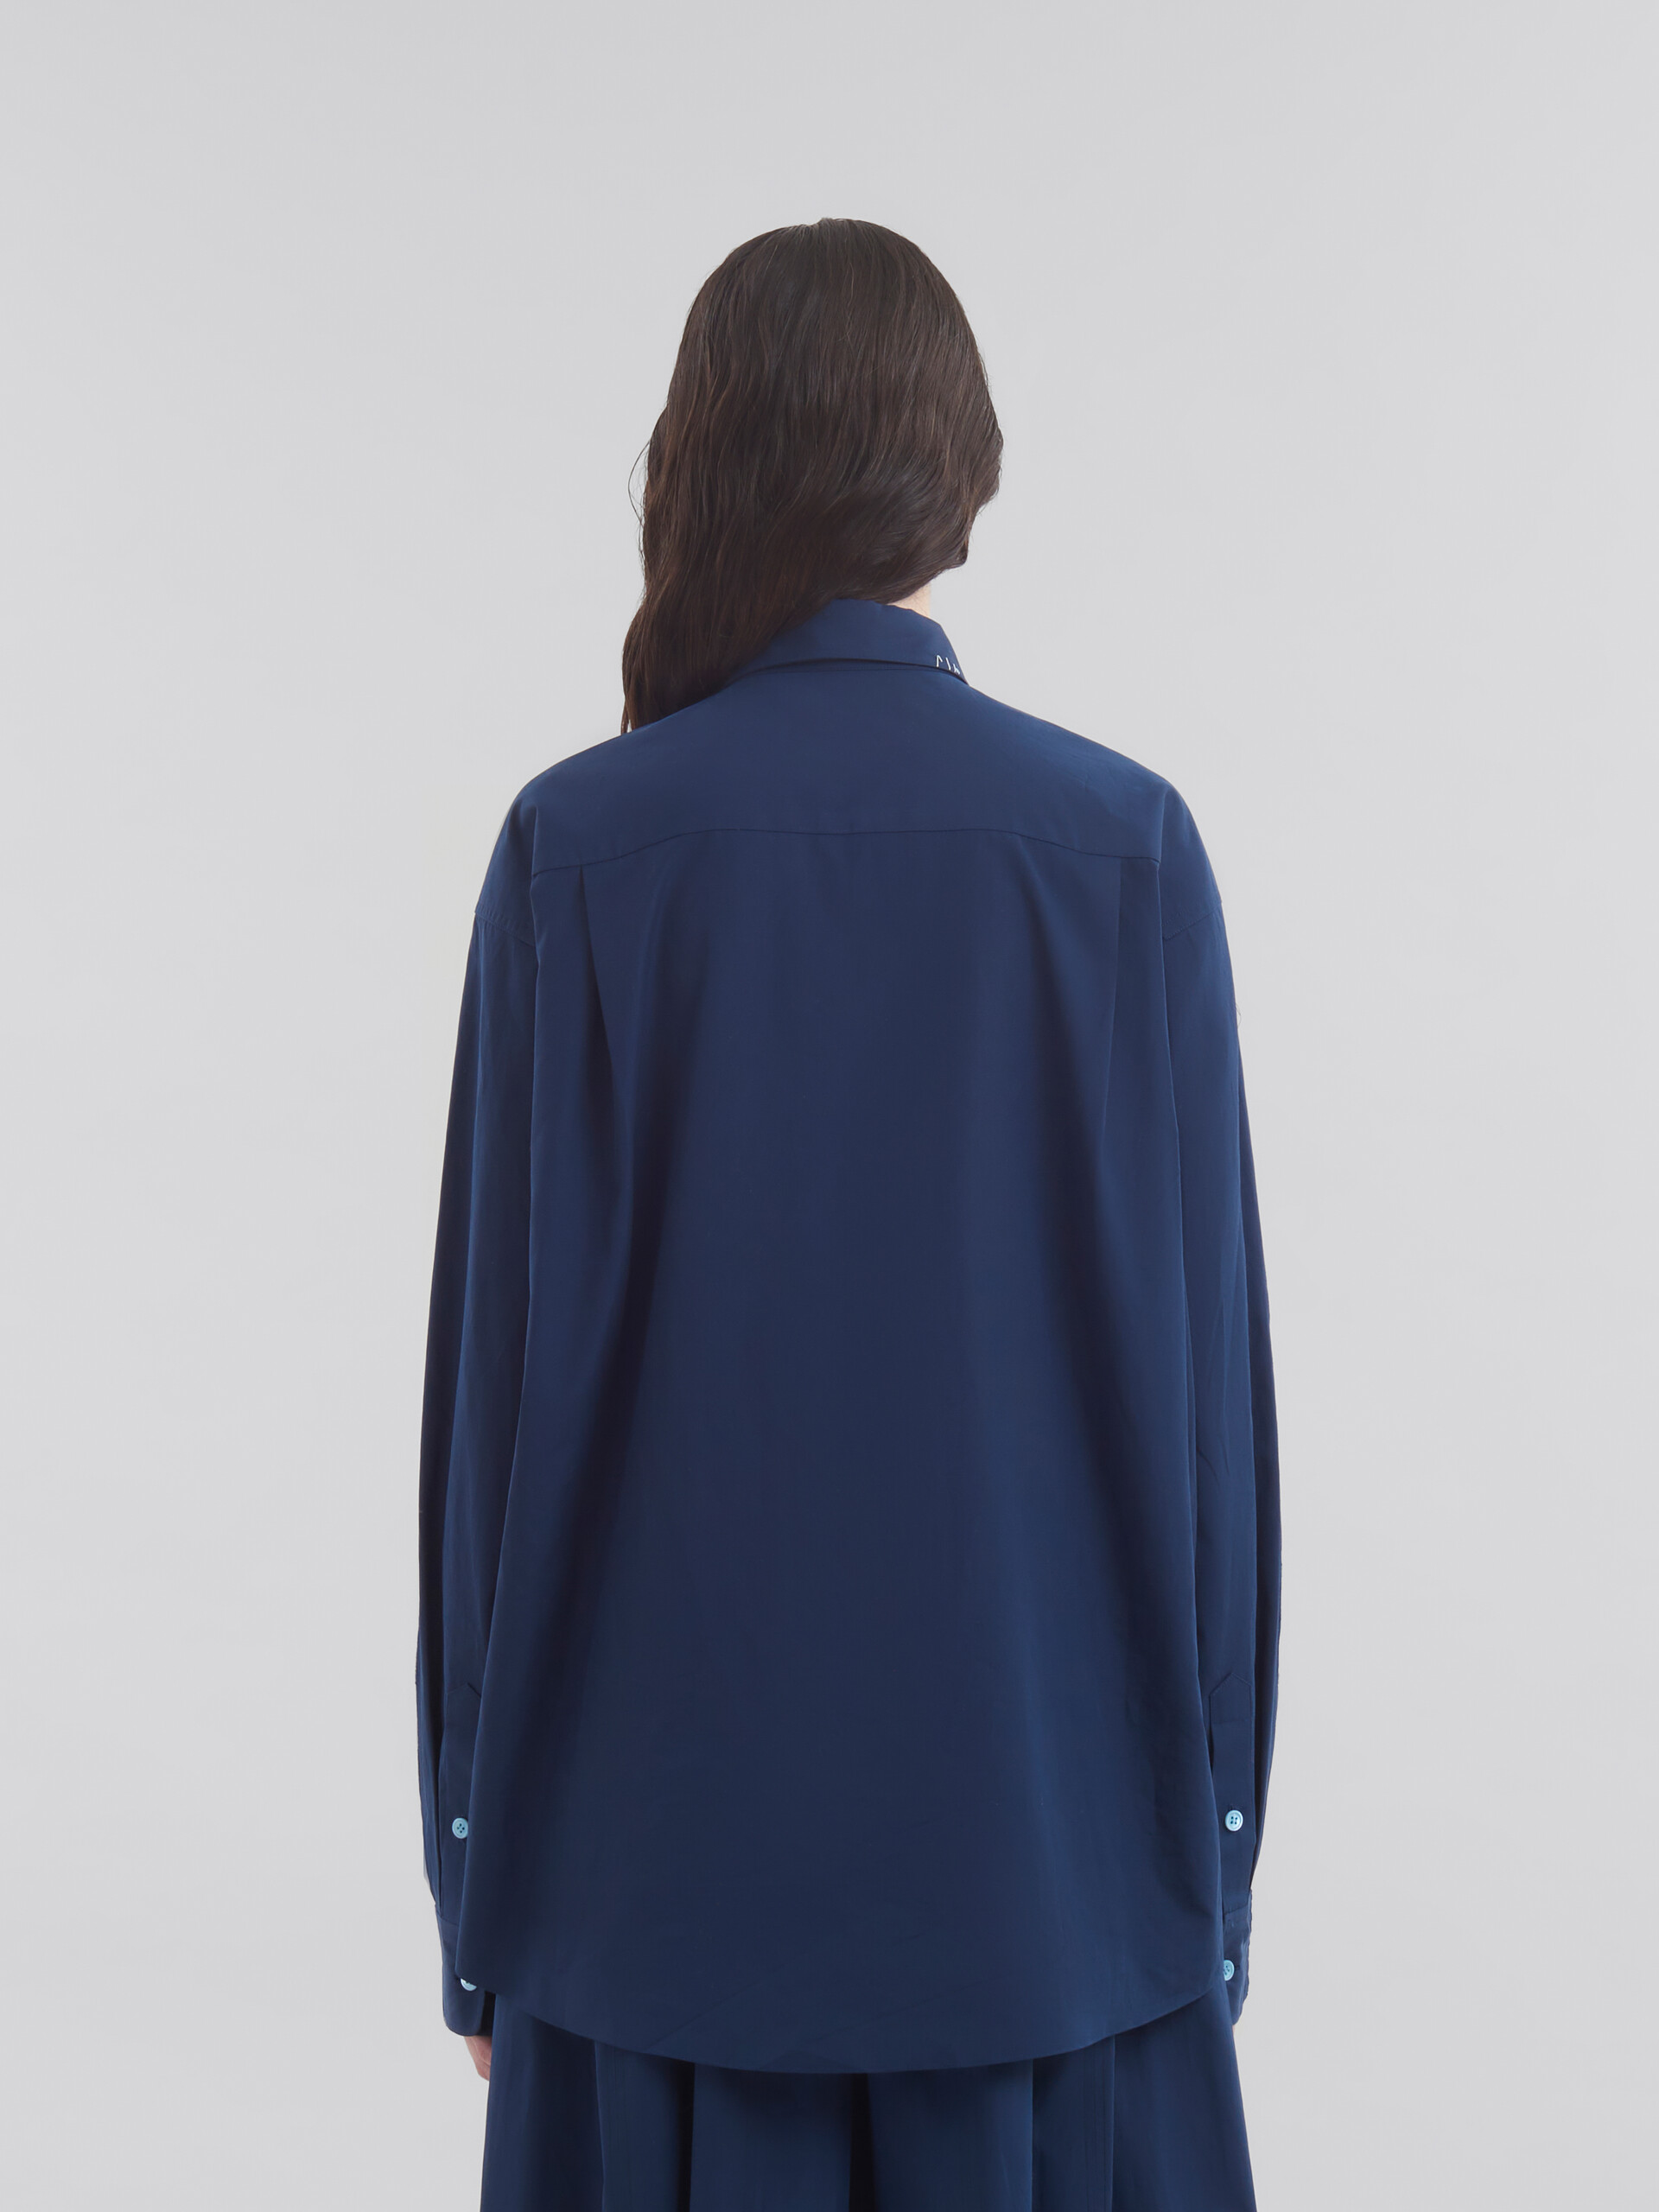 ブルー コントラストバック オーガニックポプリン製シャツ - シャツ - Image 3